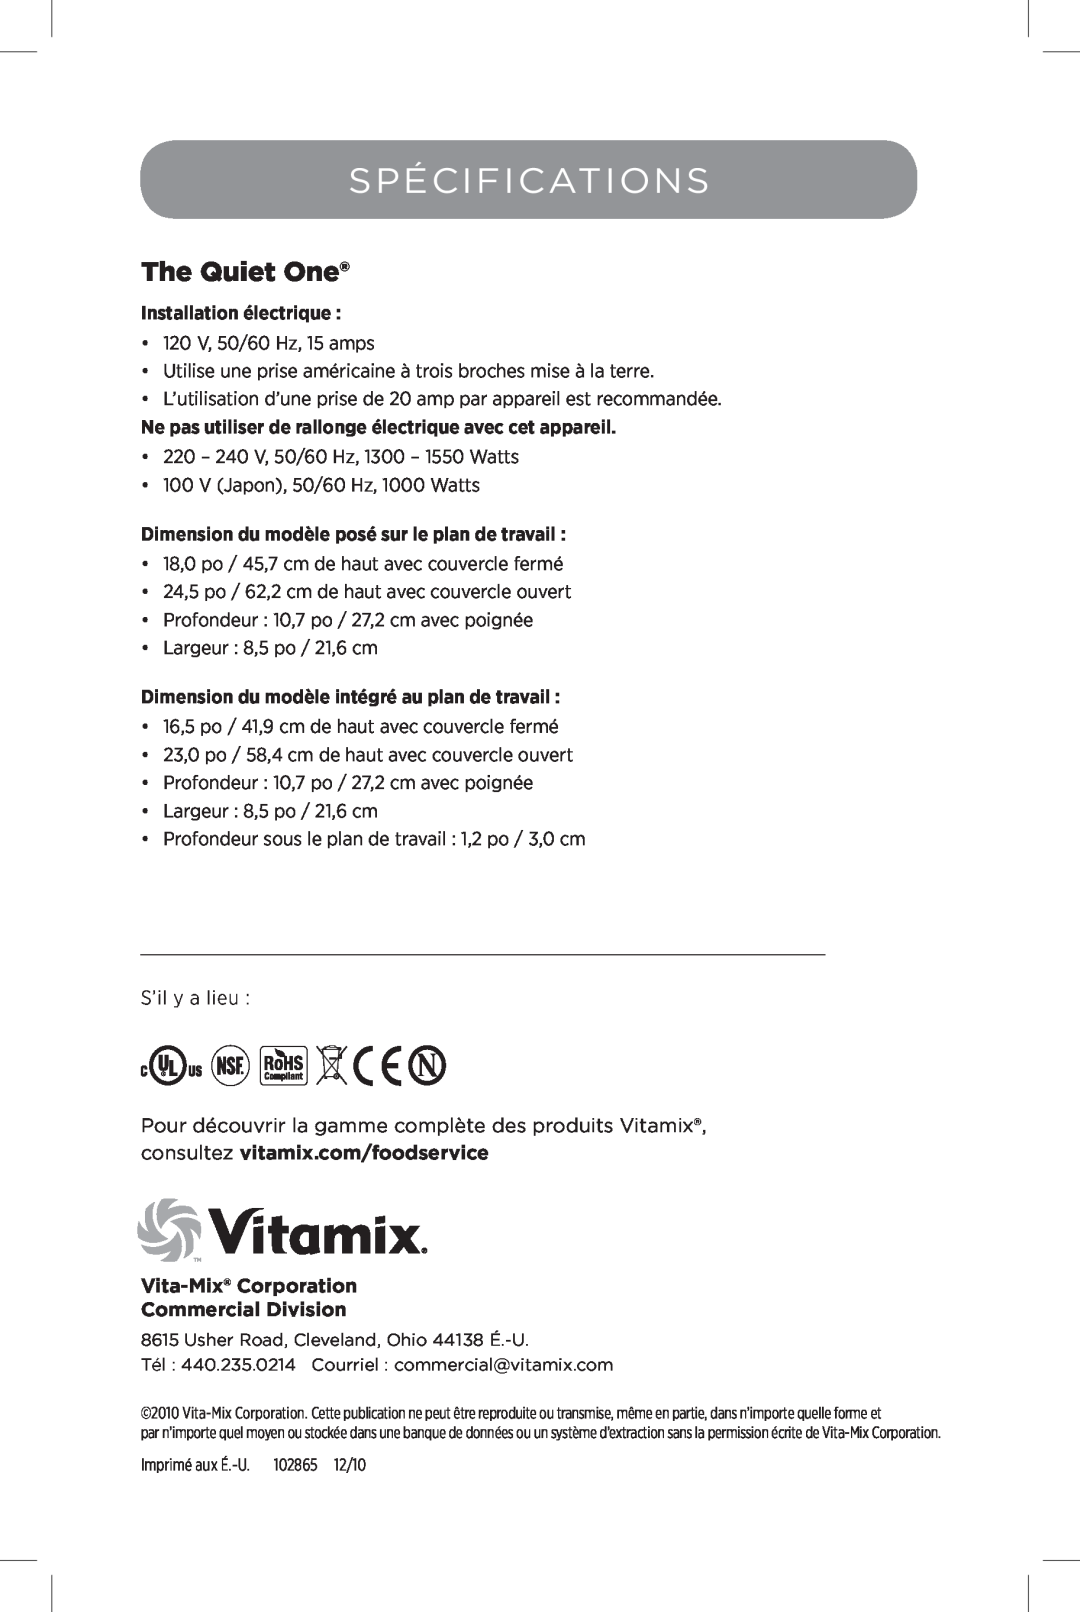 Vita-Mix The Quiet One manual Spécifications, Vita-Mix Corporation Commercial Division, Installation électrique 